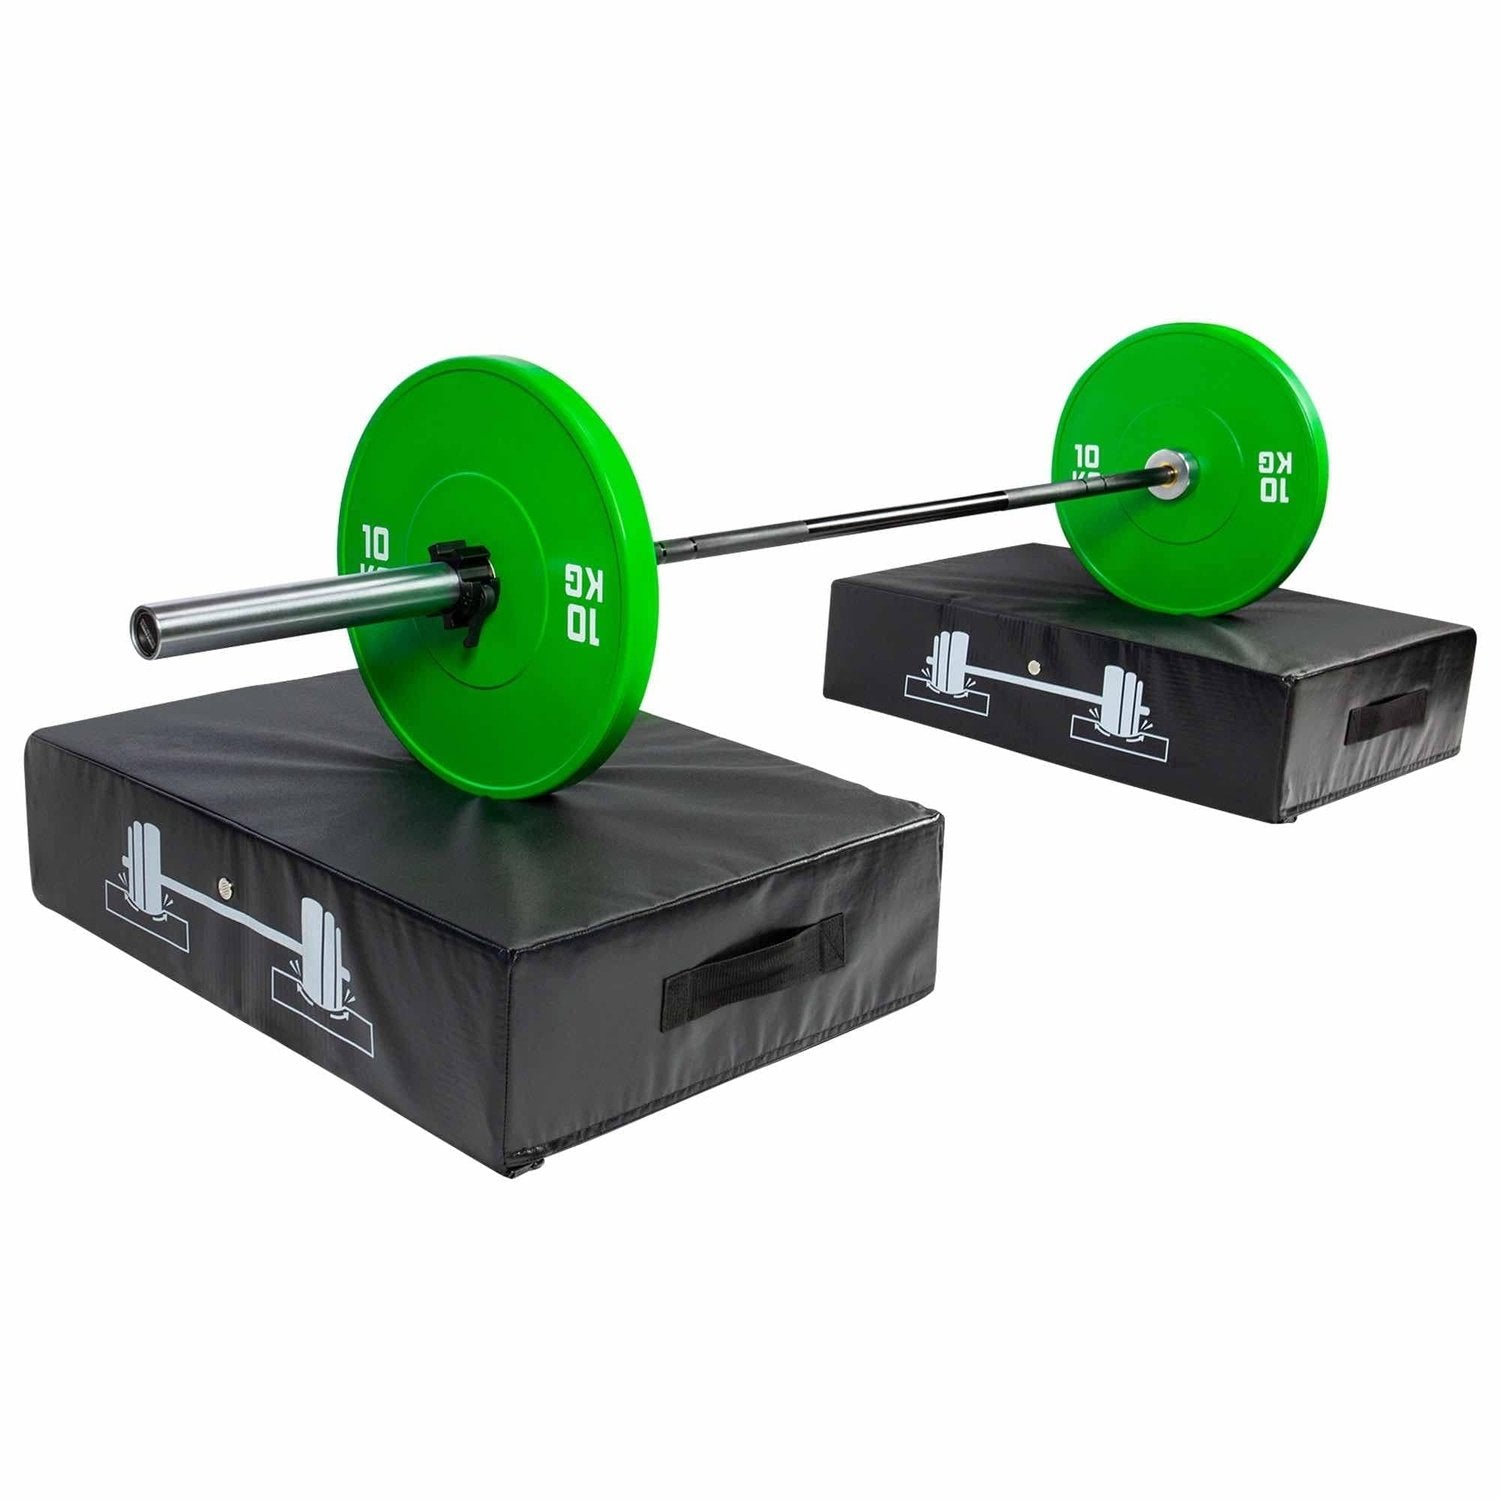 HighPowered Weightlifting Pads (Drop Pads) kaufen bei HighPowered.ch